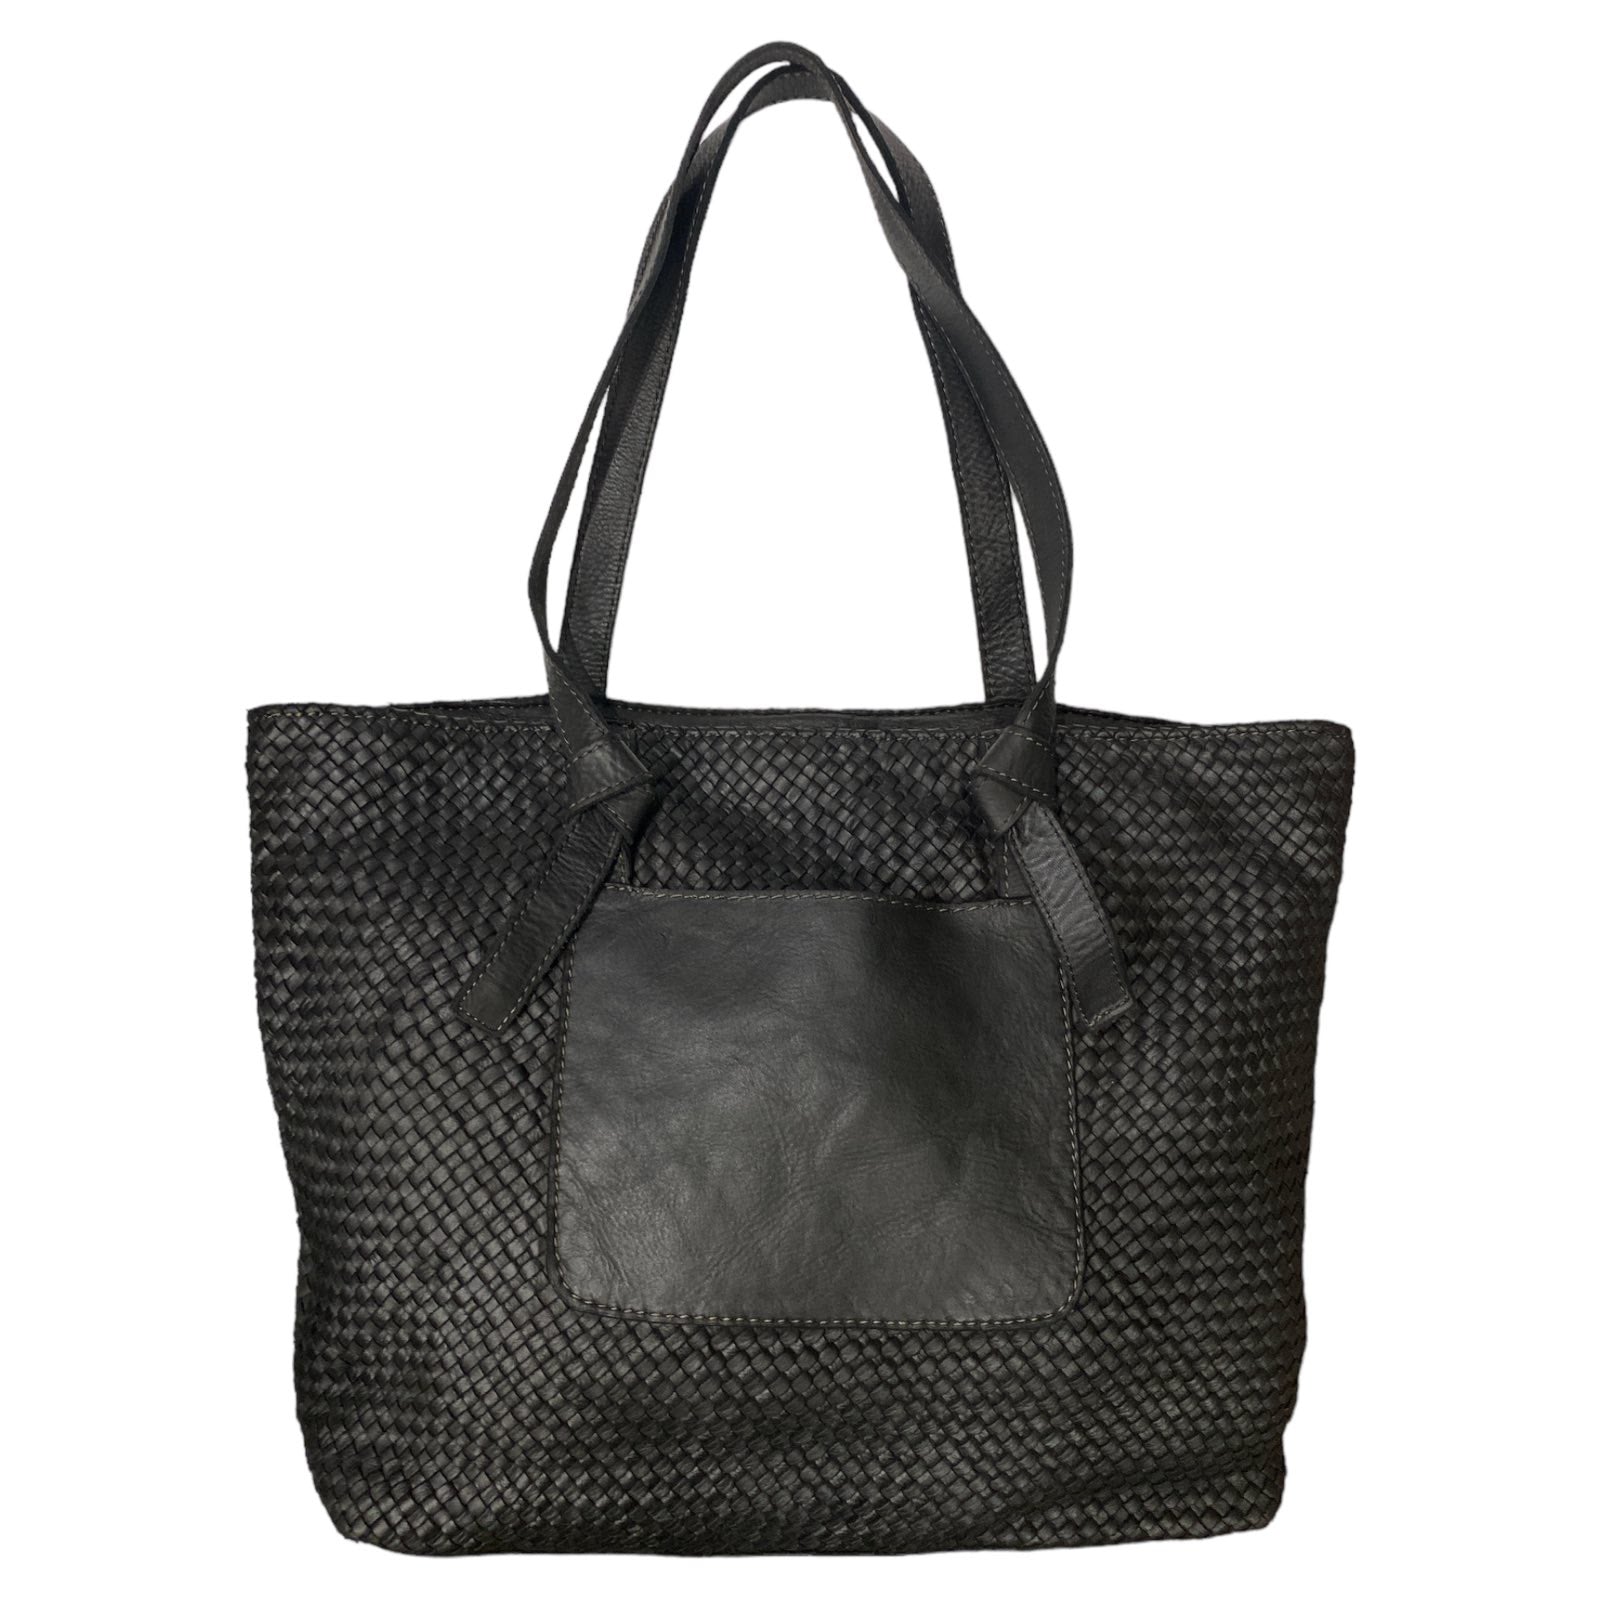 Black woven leather shoulder bag with front pocket